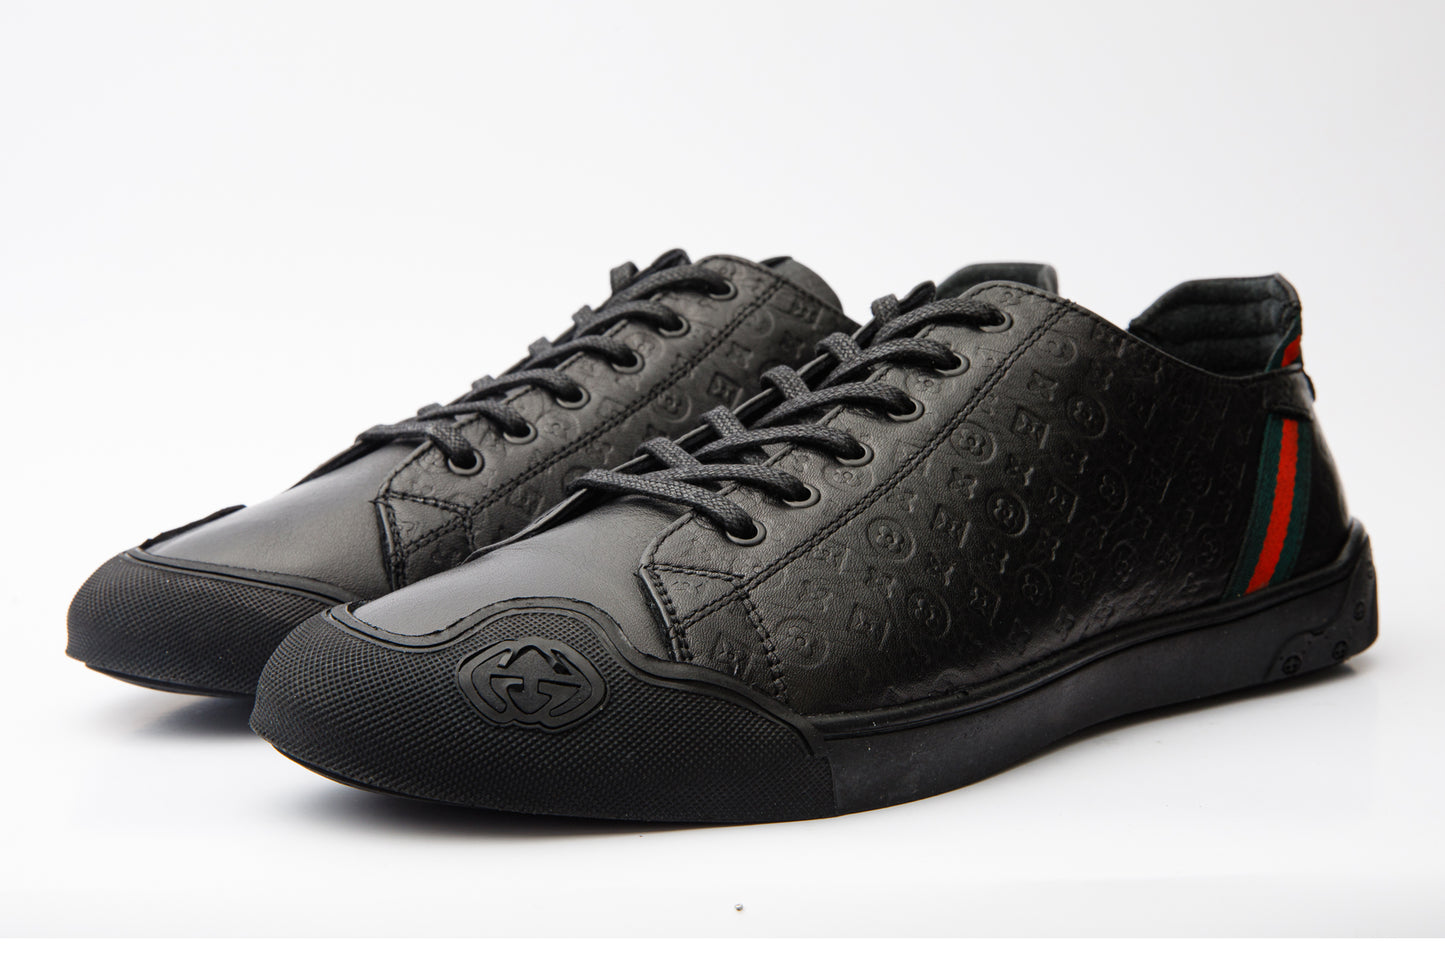 The Getto Black Leather Men Sneaker